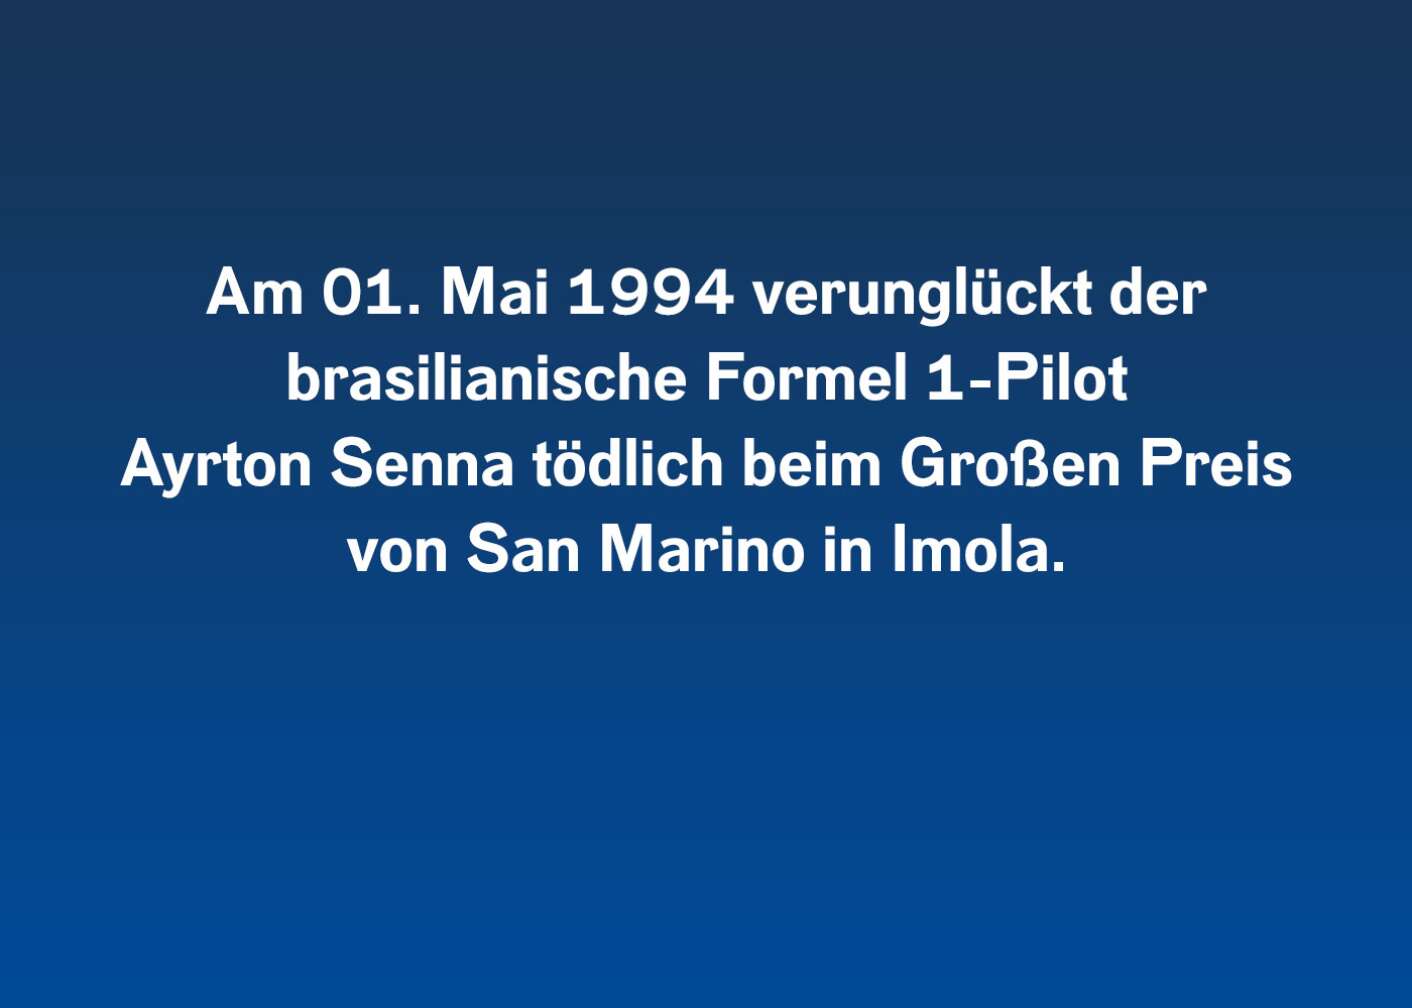 Am 01. Mai 1994 verunglückt der brasilianische Formel-1-Pilot Ayrton Senna tödlich beim Großen Preis von San Marino im Imola.